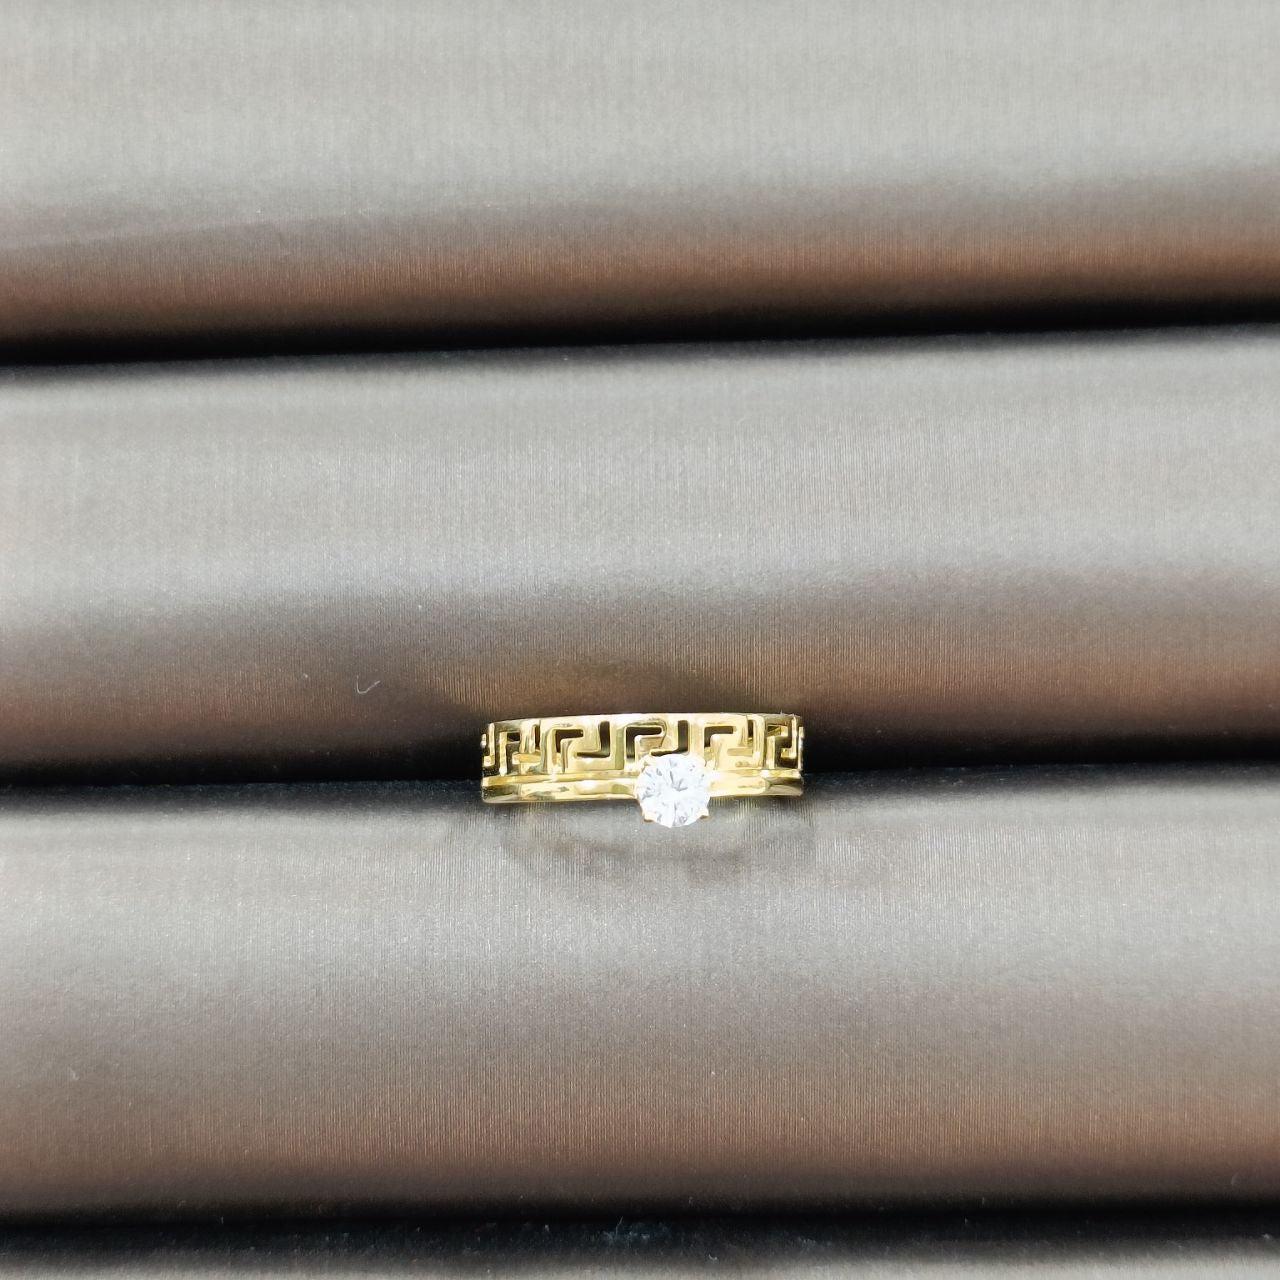 22K / 916 Gold Wan zi Design Crystal Ring-916 gold-Best Gold Shop